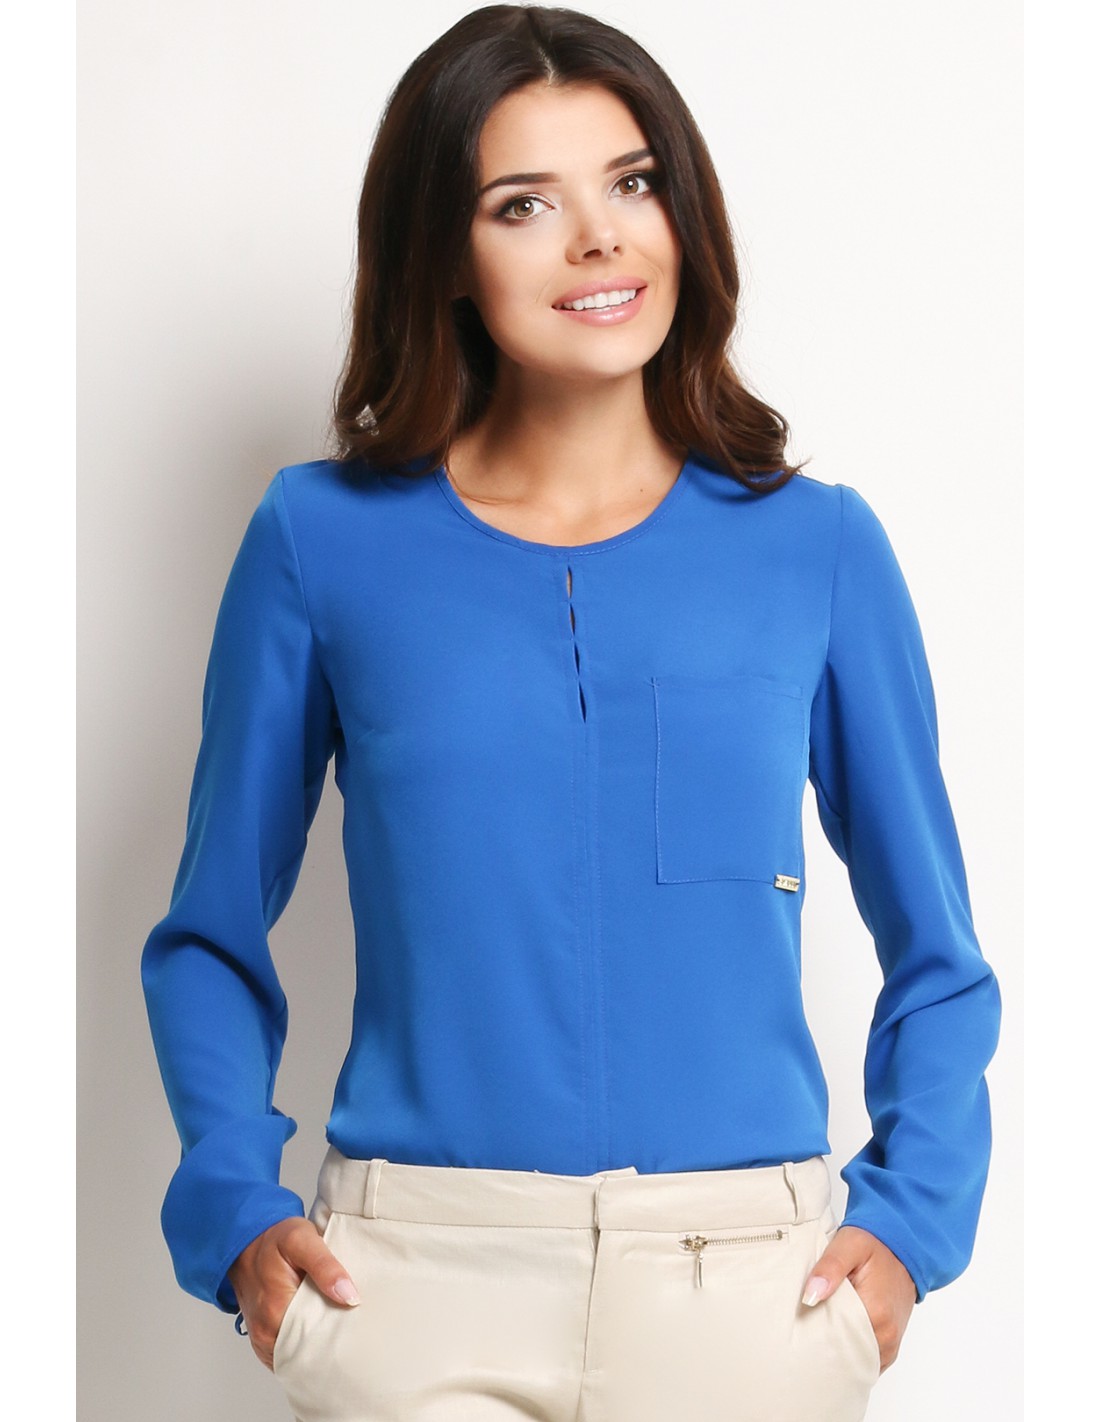 Купить голубые блузку. Блузка женская. Блузка однотонная. Голубая блузка. Блузка с длинным рукавом.